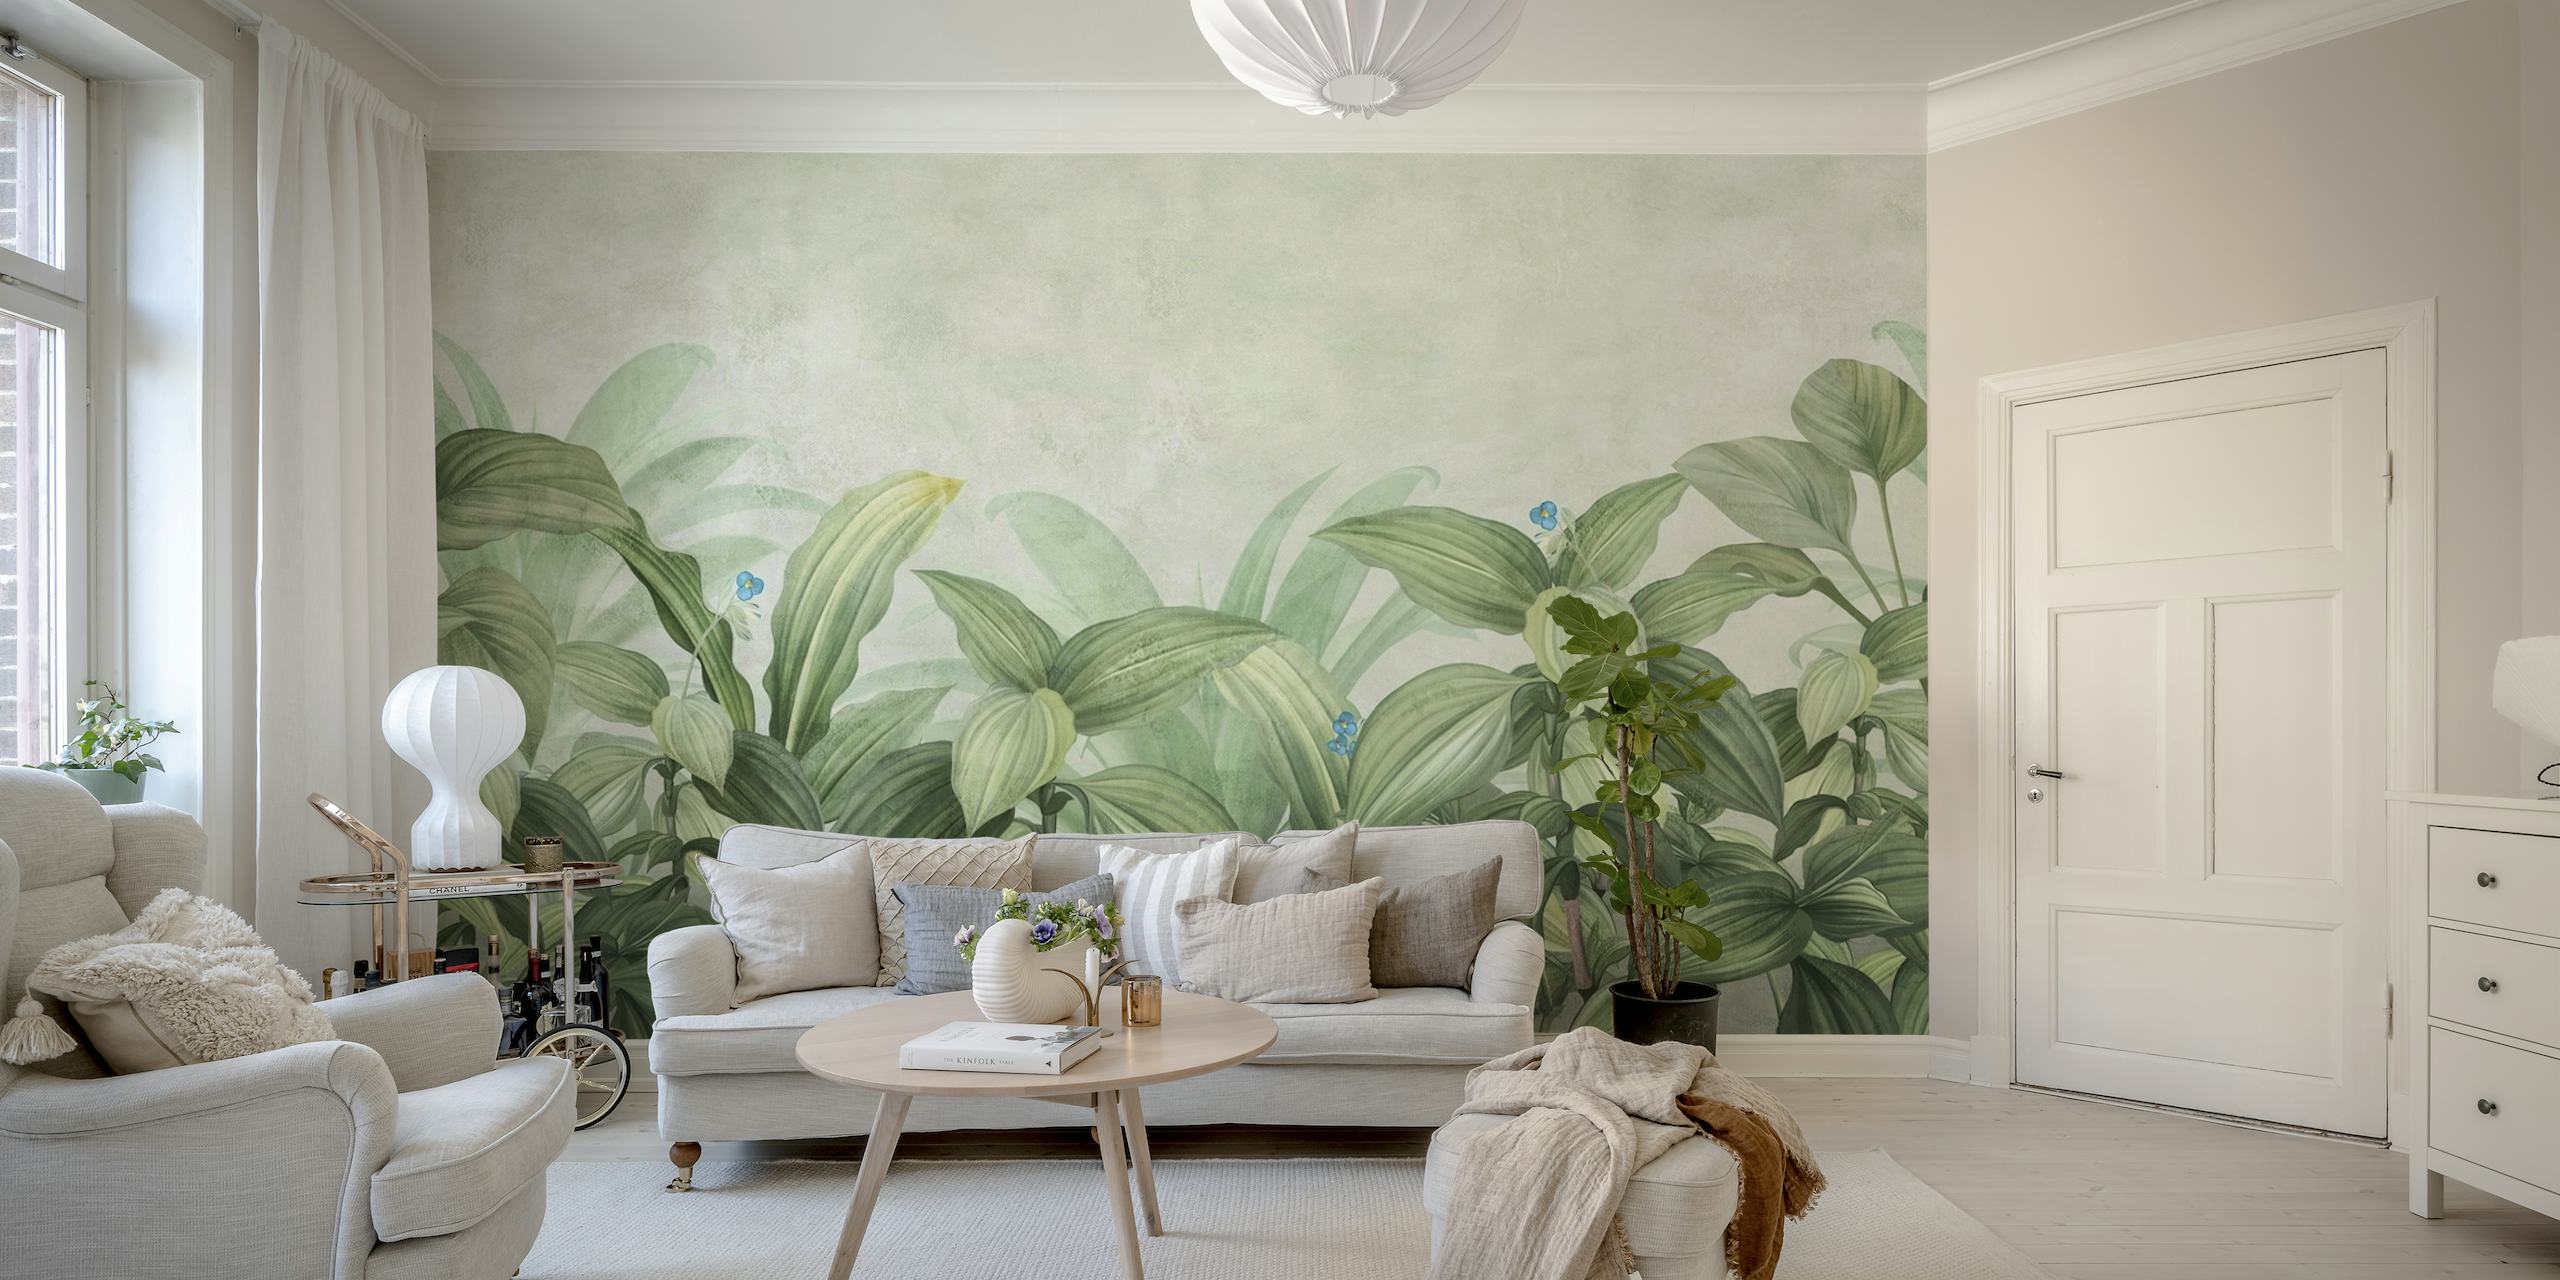 Fotomural vinílico de parede elegante de folhagem tropical com folhas verdes exuberantes e detalhes florais sutis